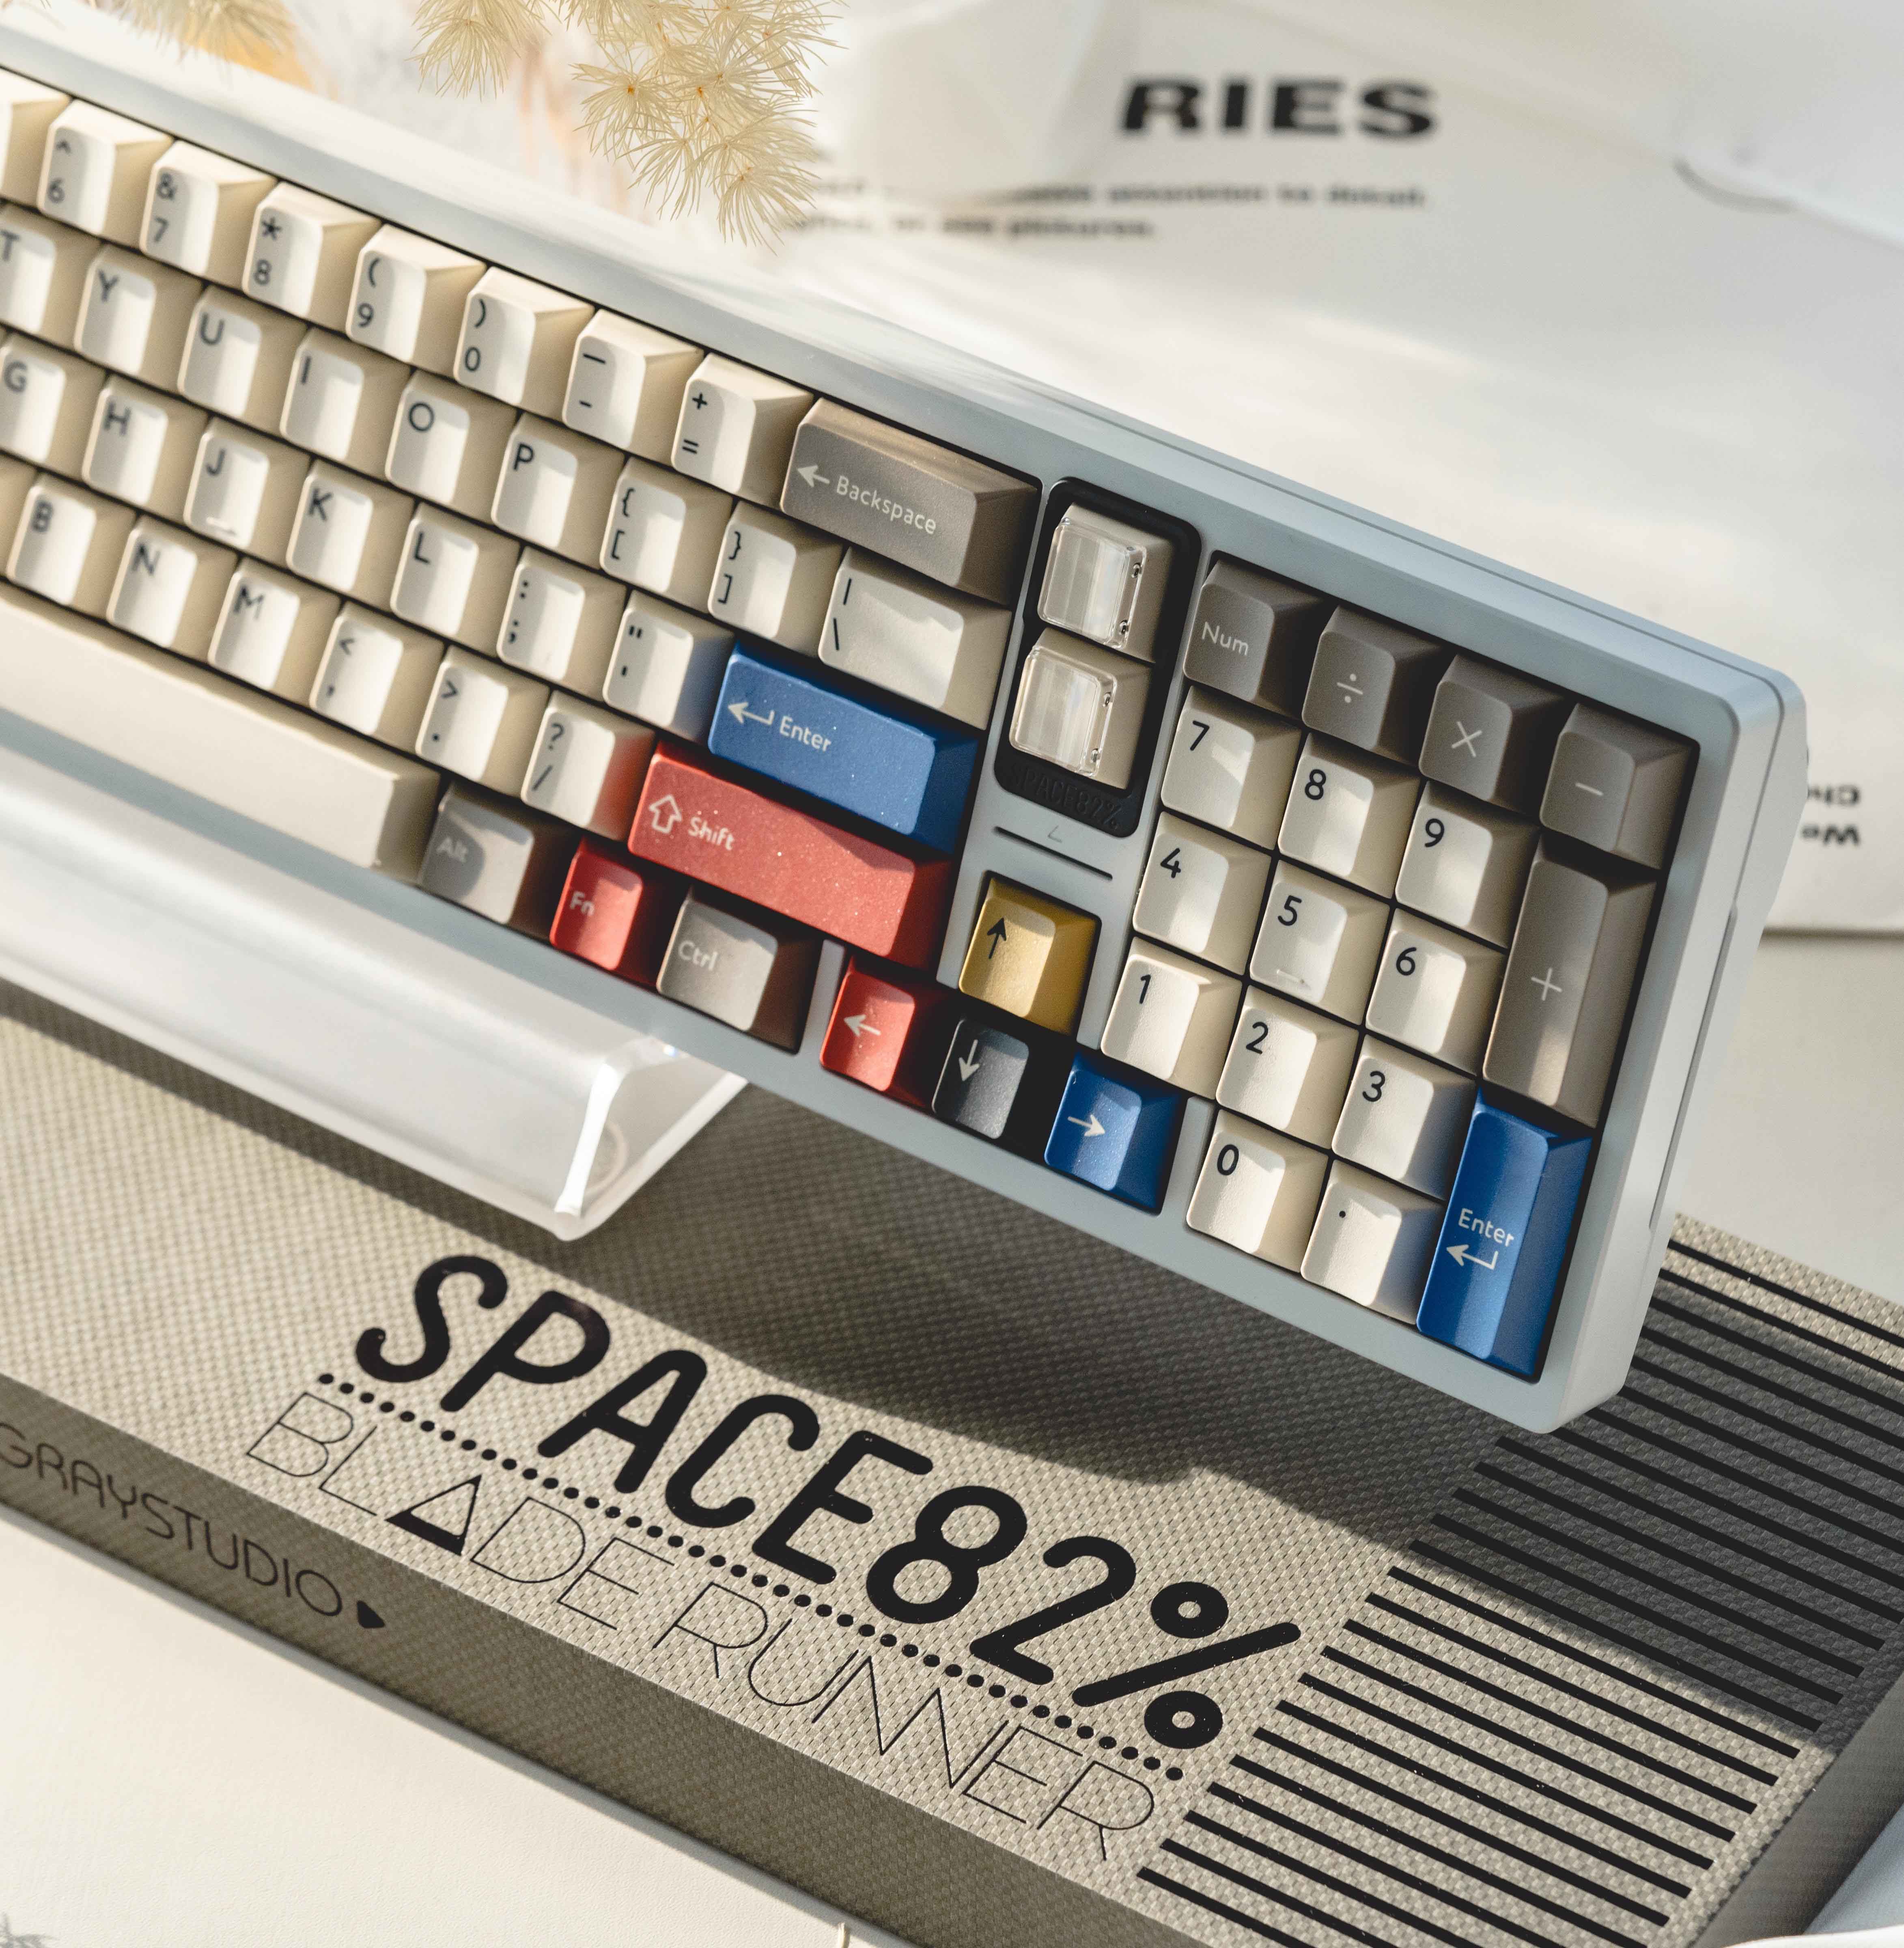 [Group Buy] Space82 - Blade Runner